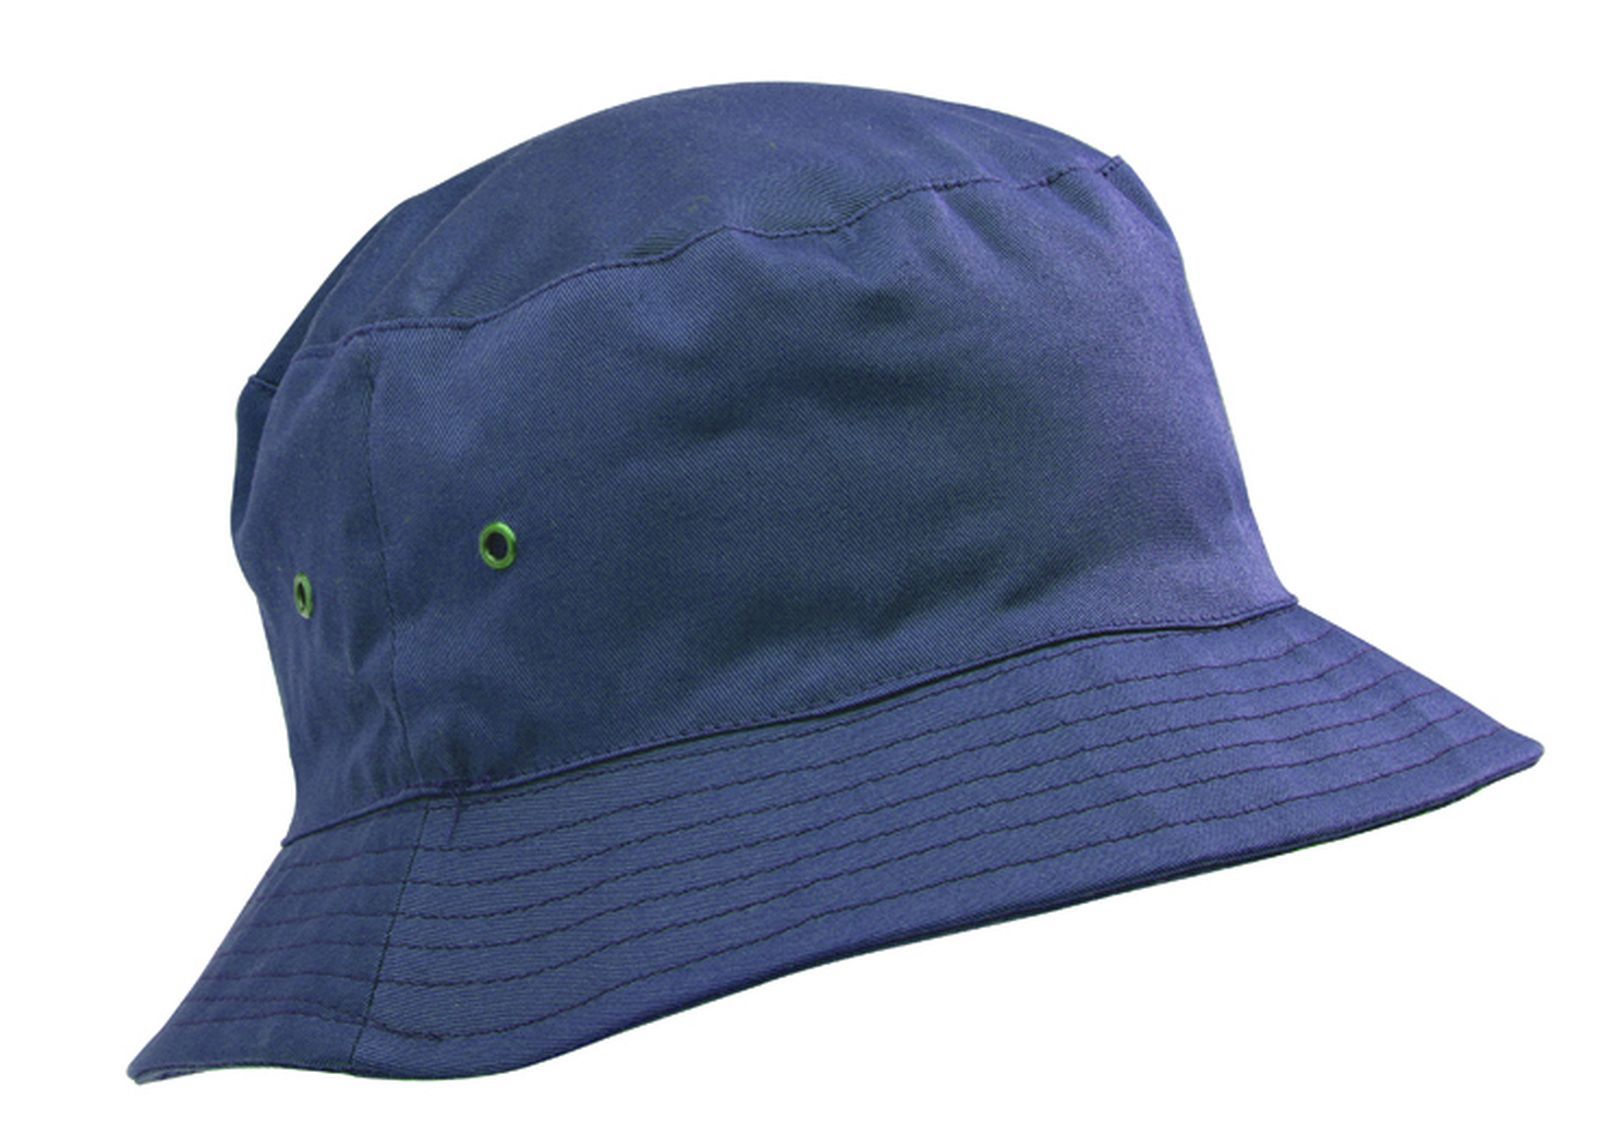 Sun (Bucket) Hats - Schoolwear Centres | School Uniform Centres